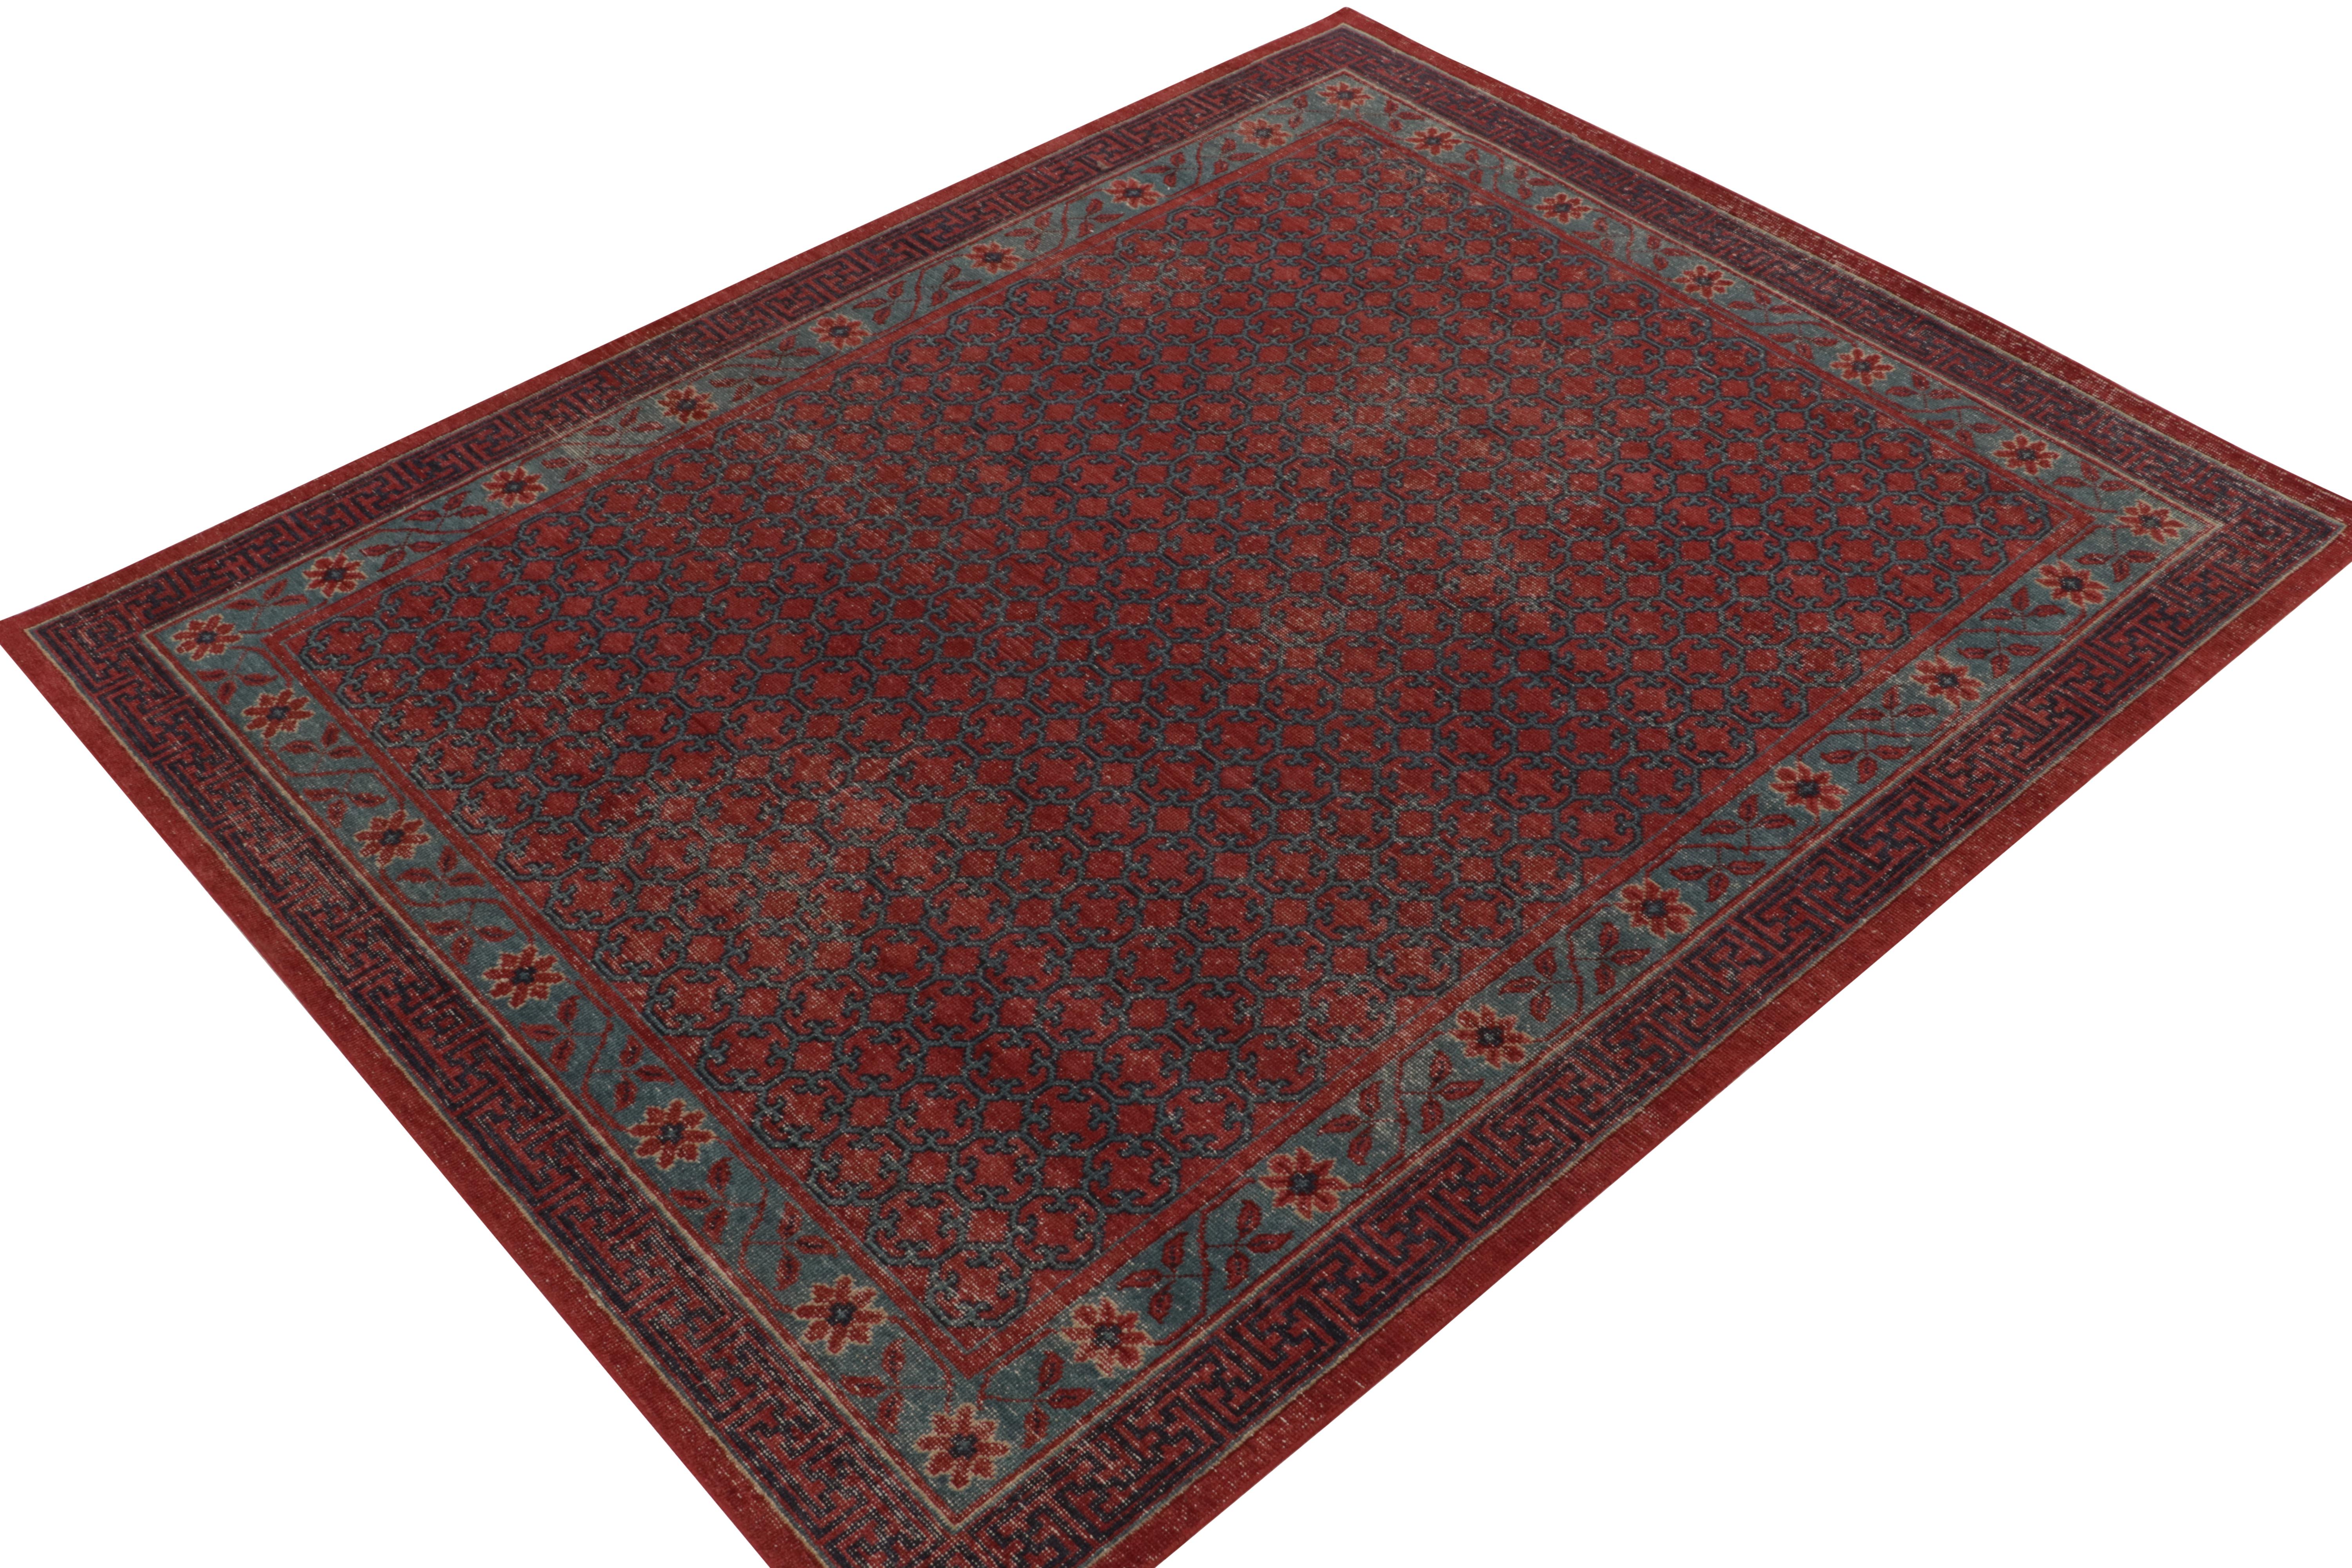 Un élégant tapis 8x10 en laine nouée à la main de la collection Homage de Rug & Kilim - une encyclopédie texturale audacieuse de motifs et de styles célèbres. 

Ce style classique s'inspire des anciens tapis Khotan Samarkand du début du XXe siècle,